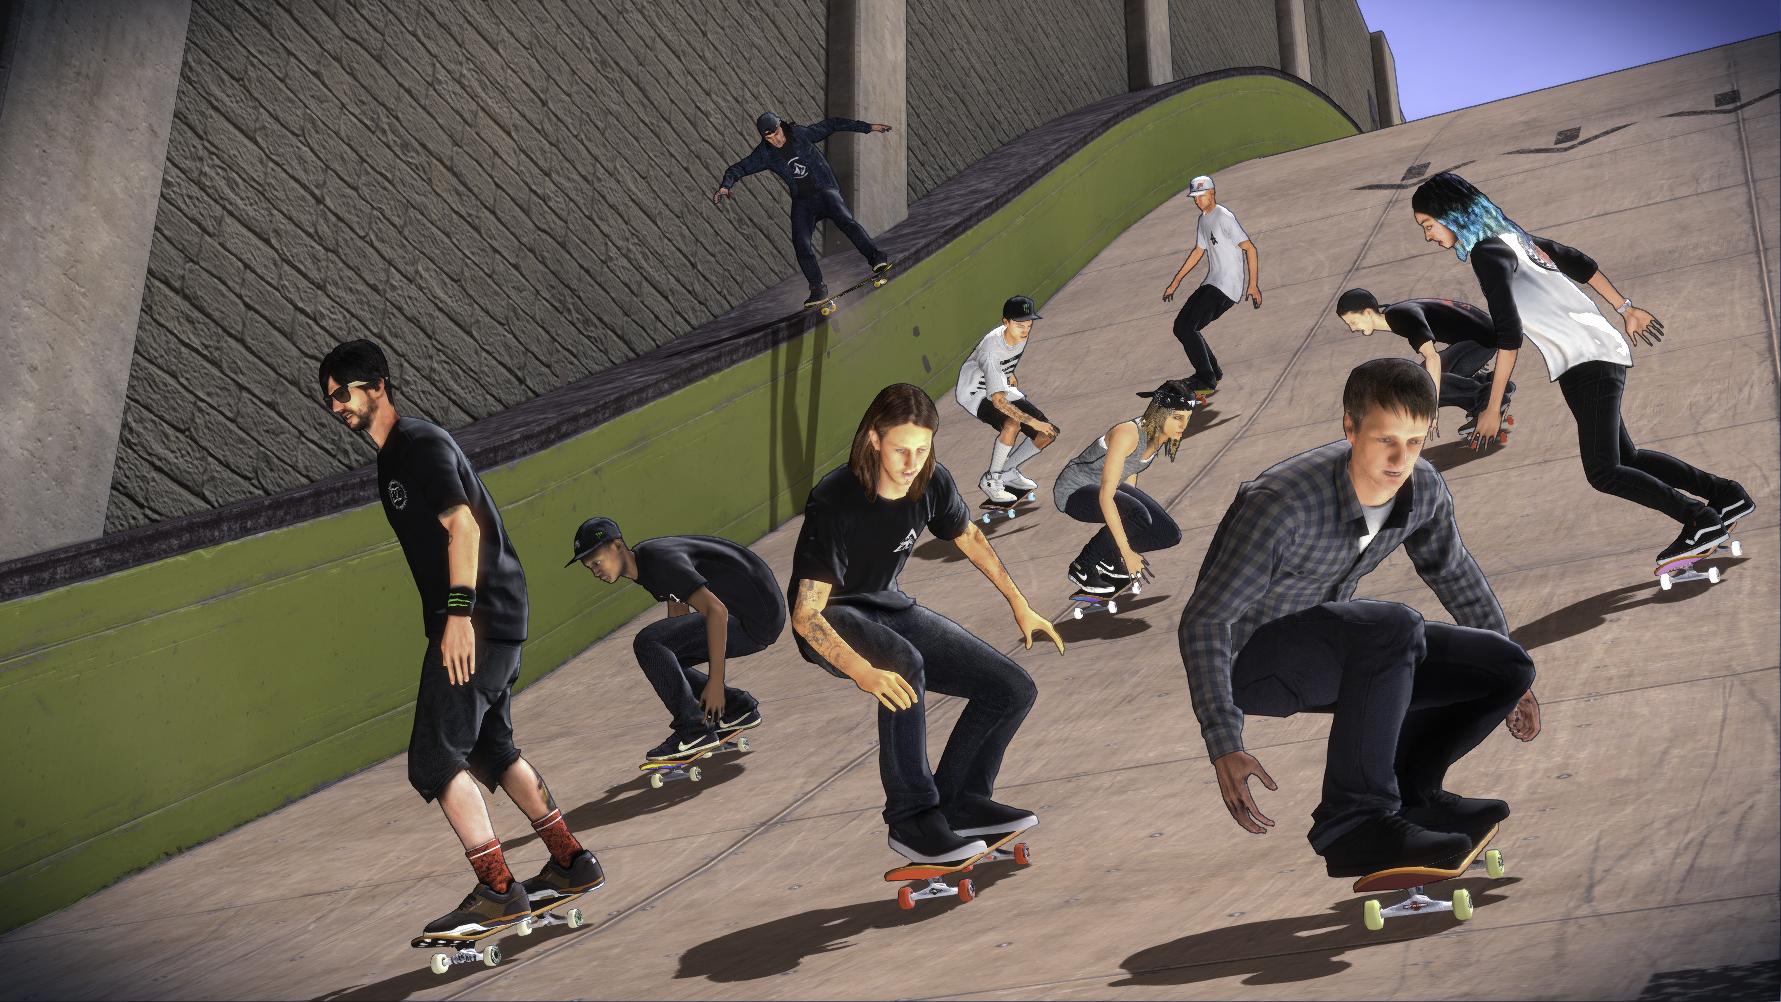 [Gamescom] Tony Hawk's Pro Skater 5 troca de visual